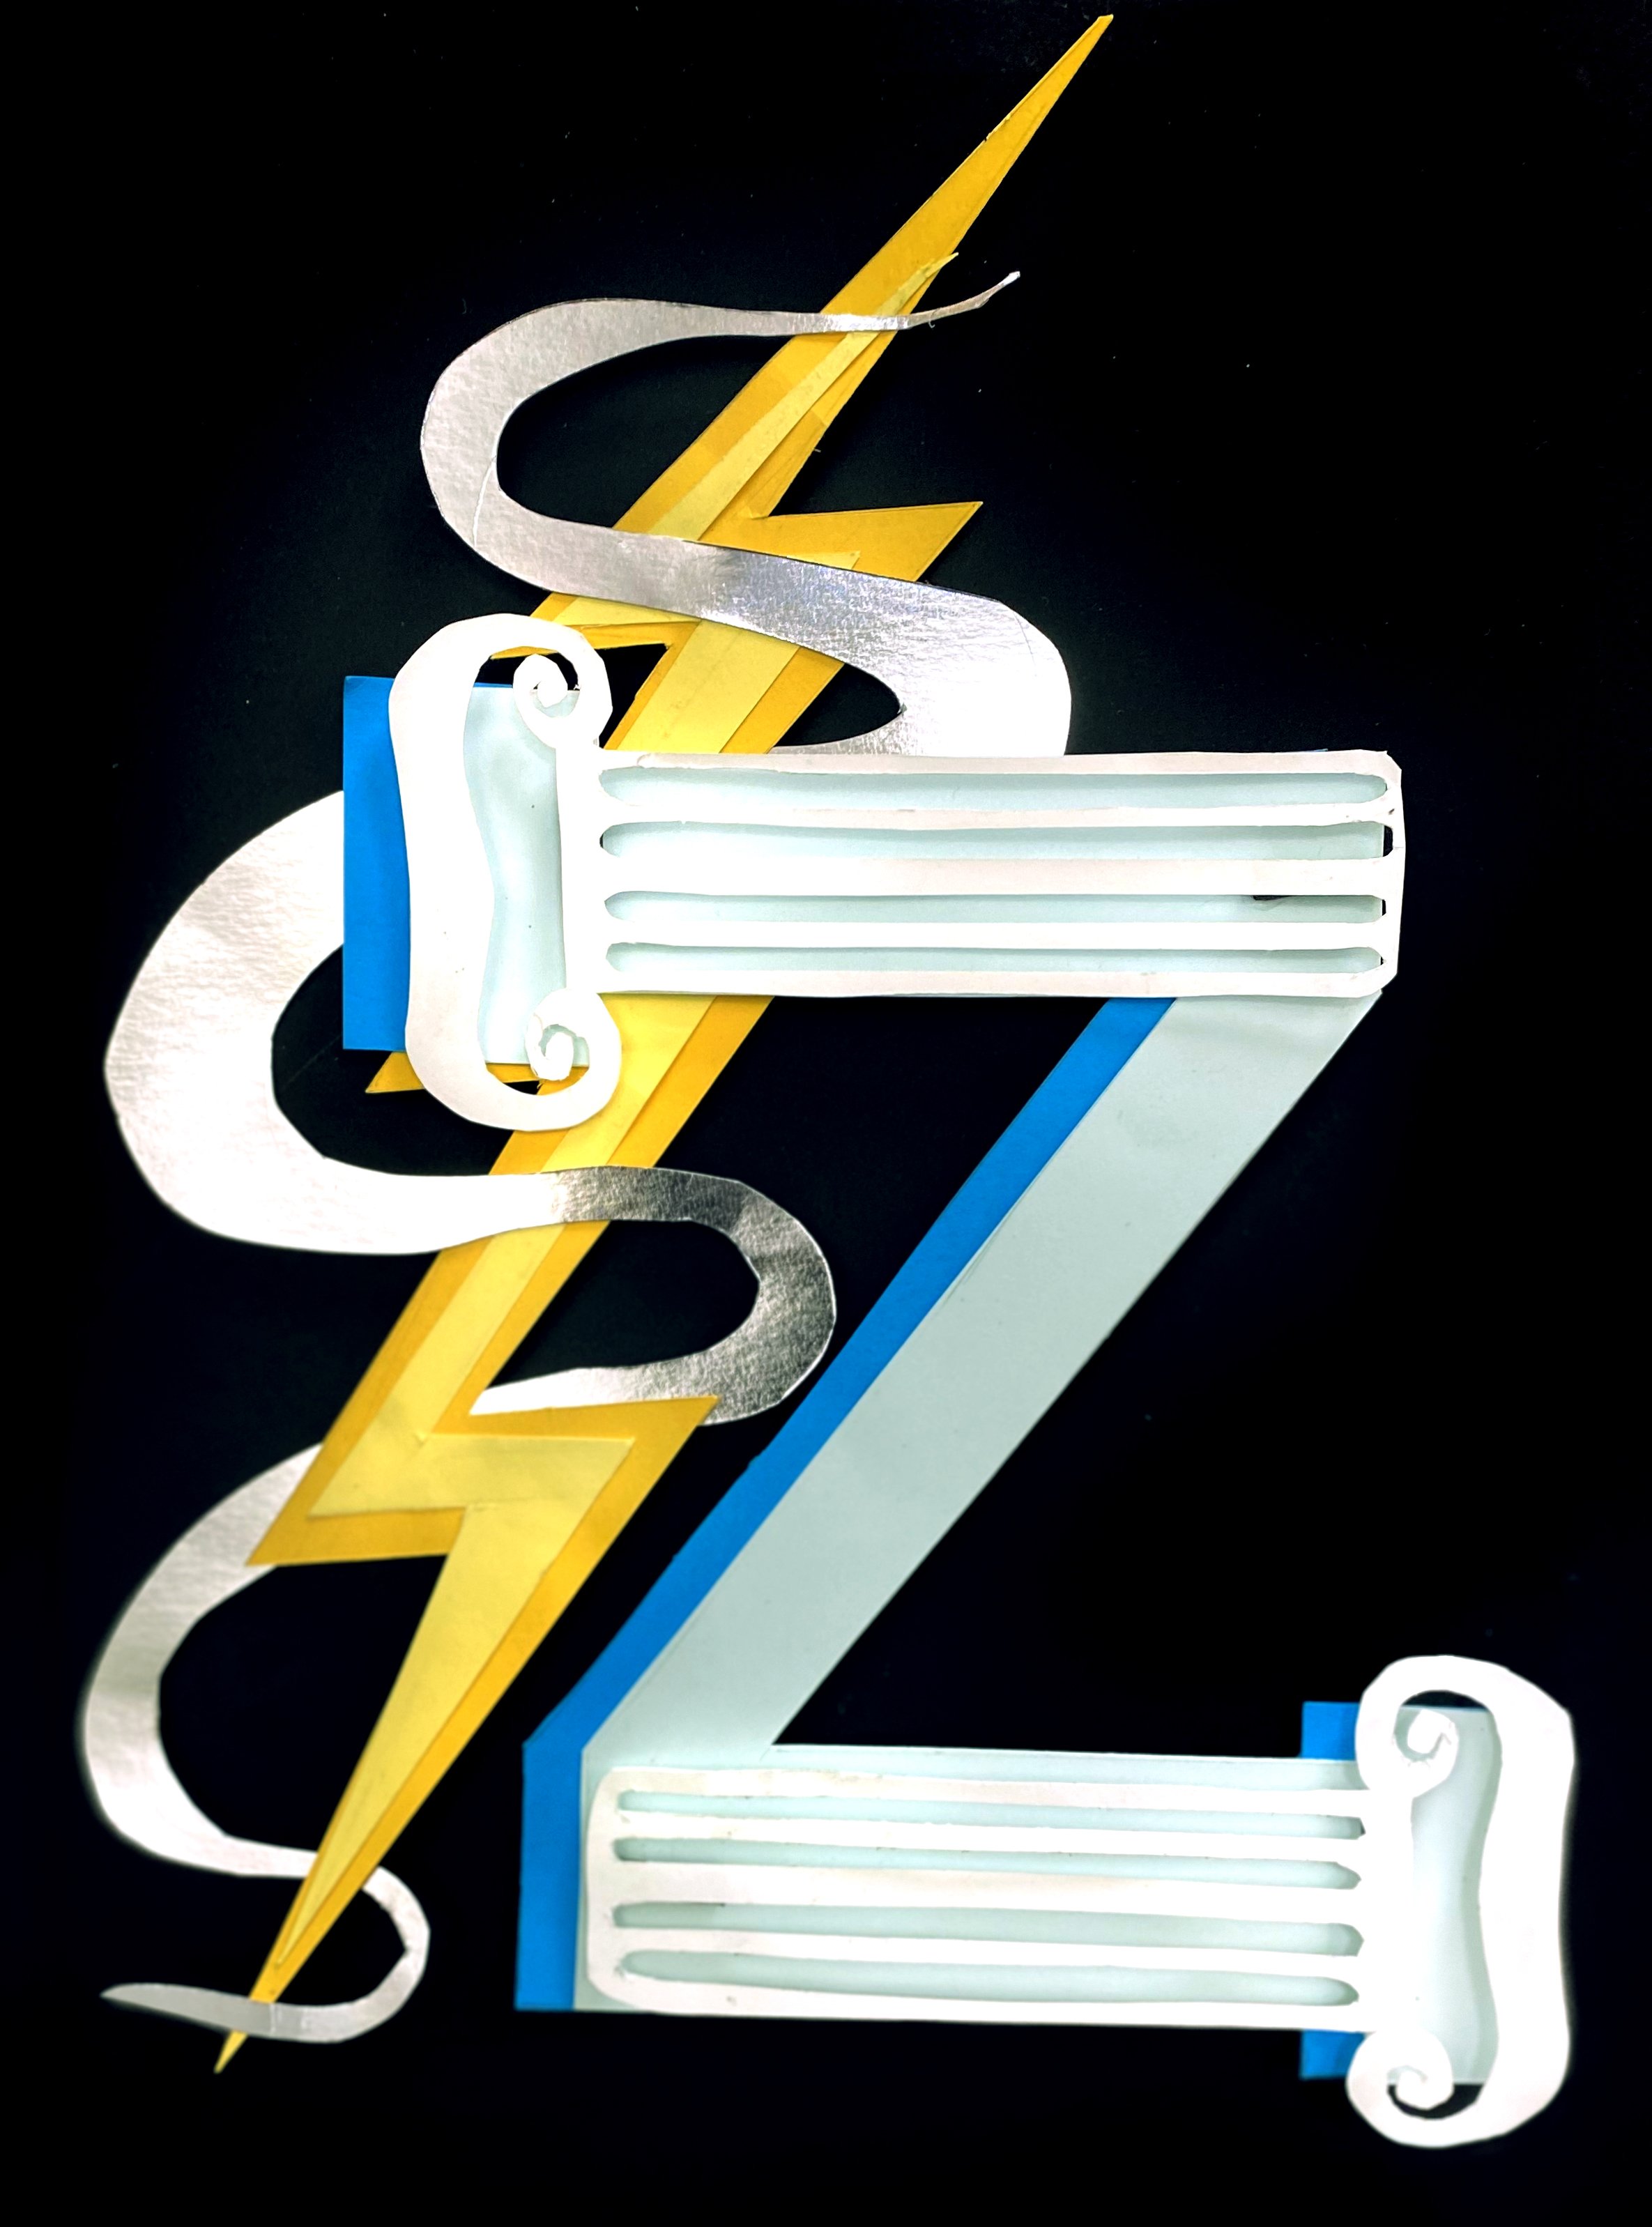 Z is for Zeus